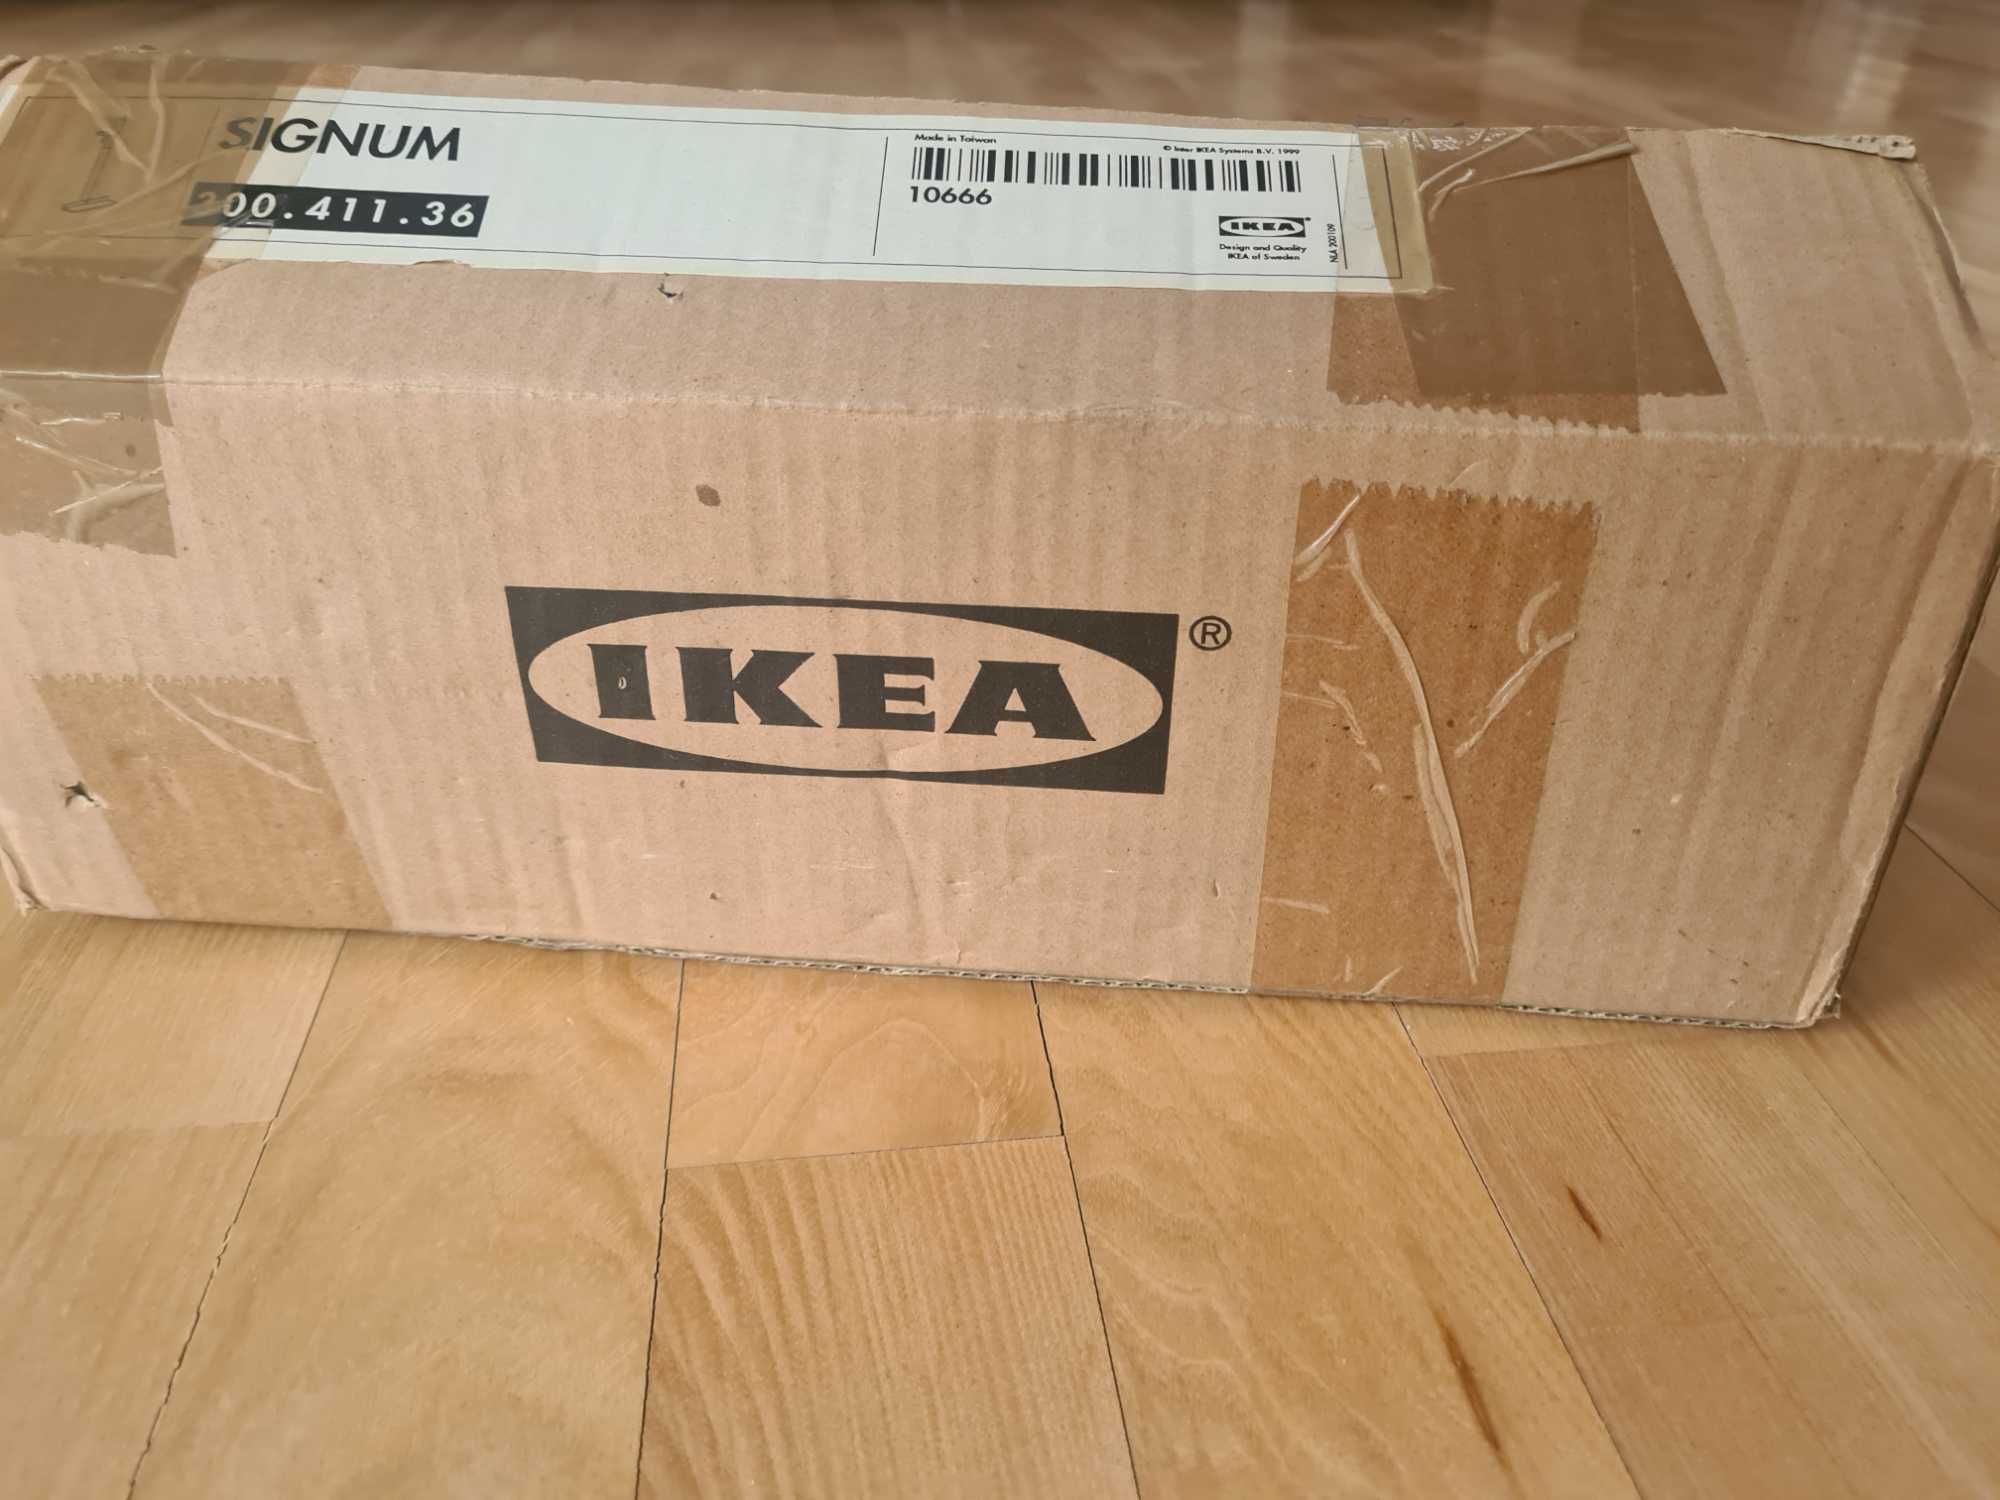 IKEA wieszak do komputera - do zawieszenia z boku biurka-stołu